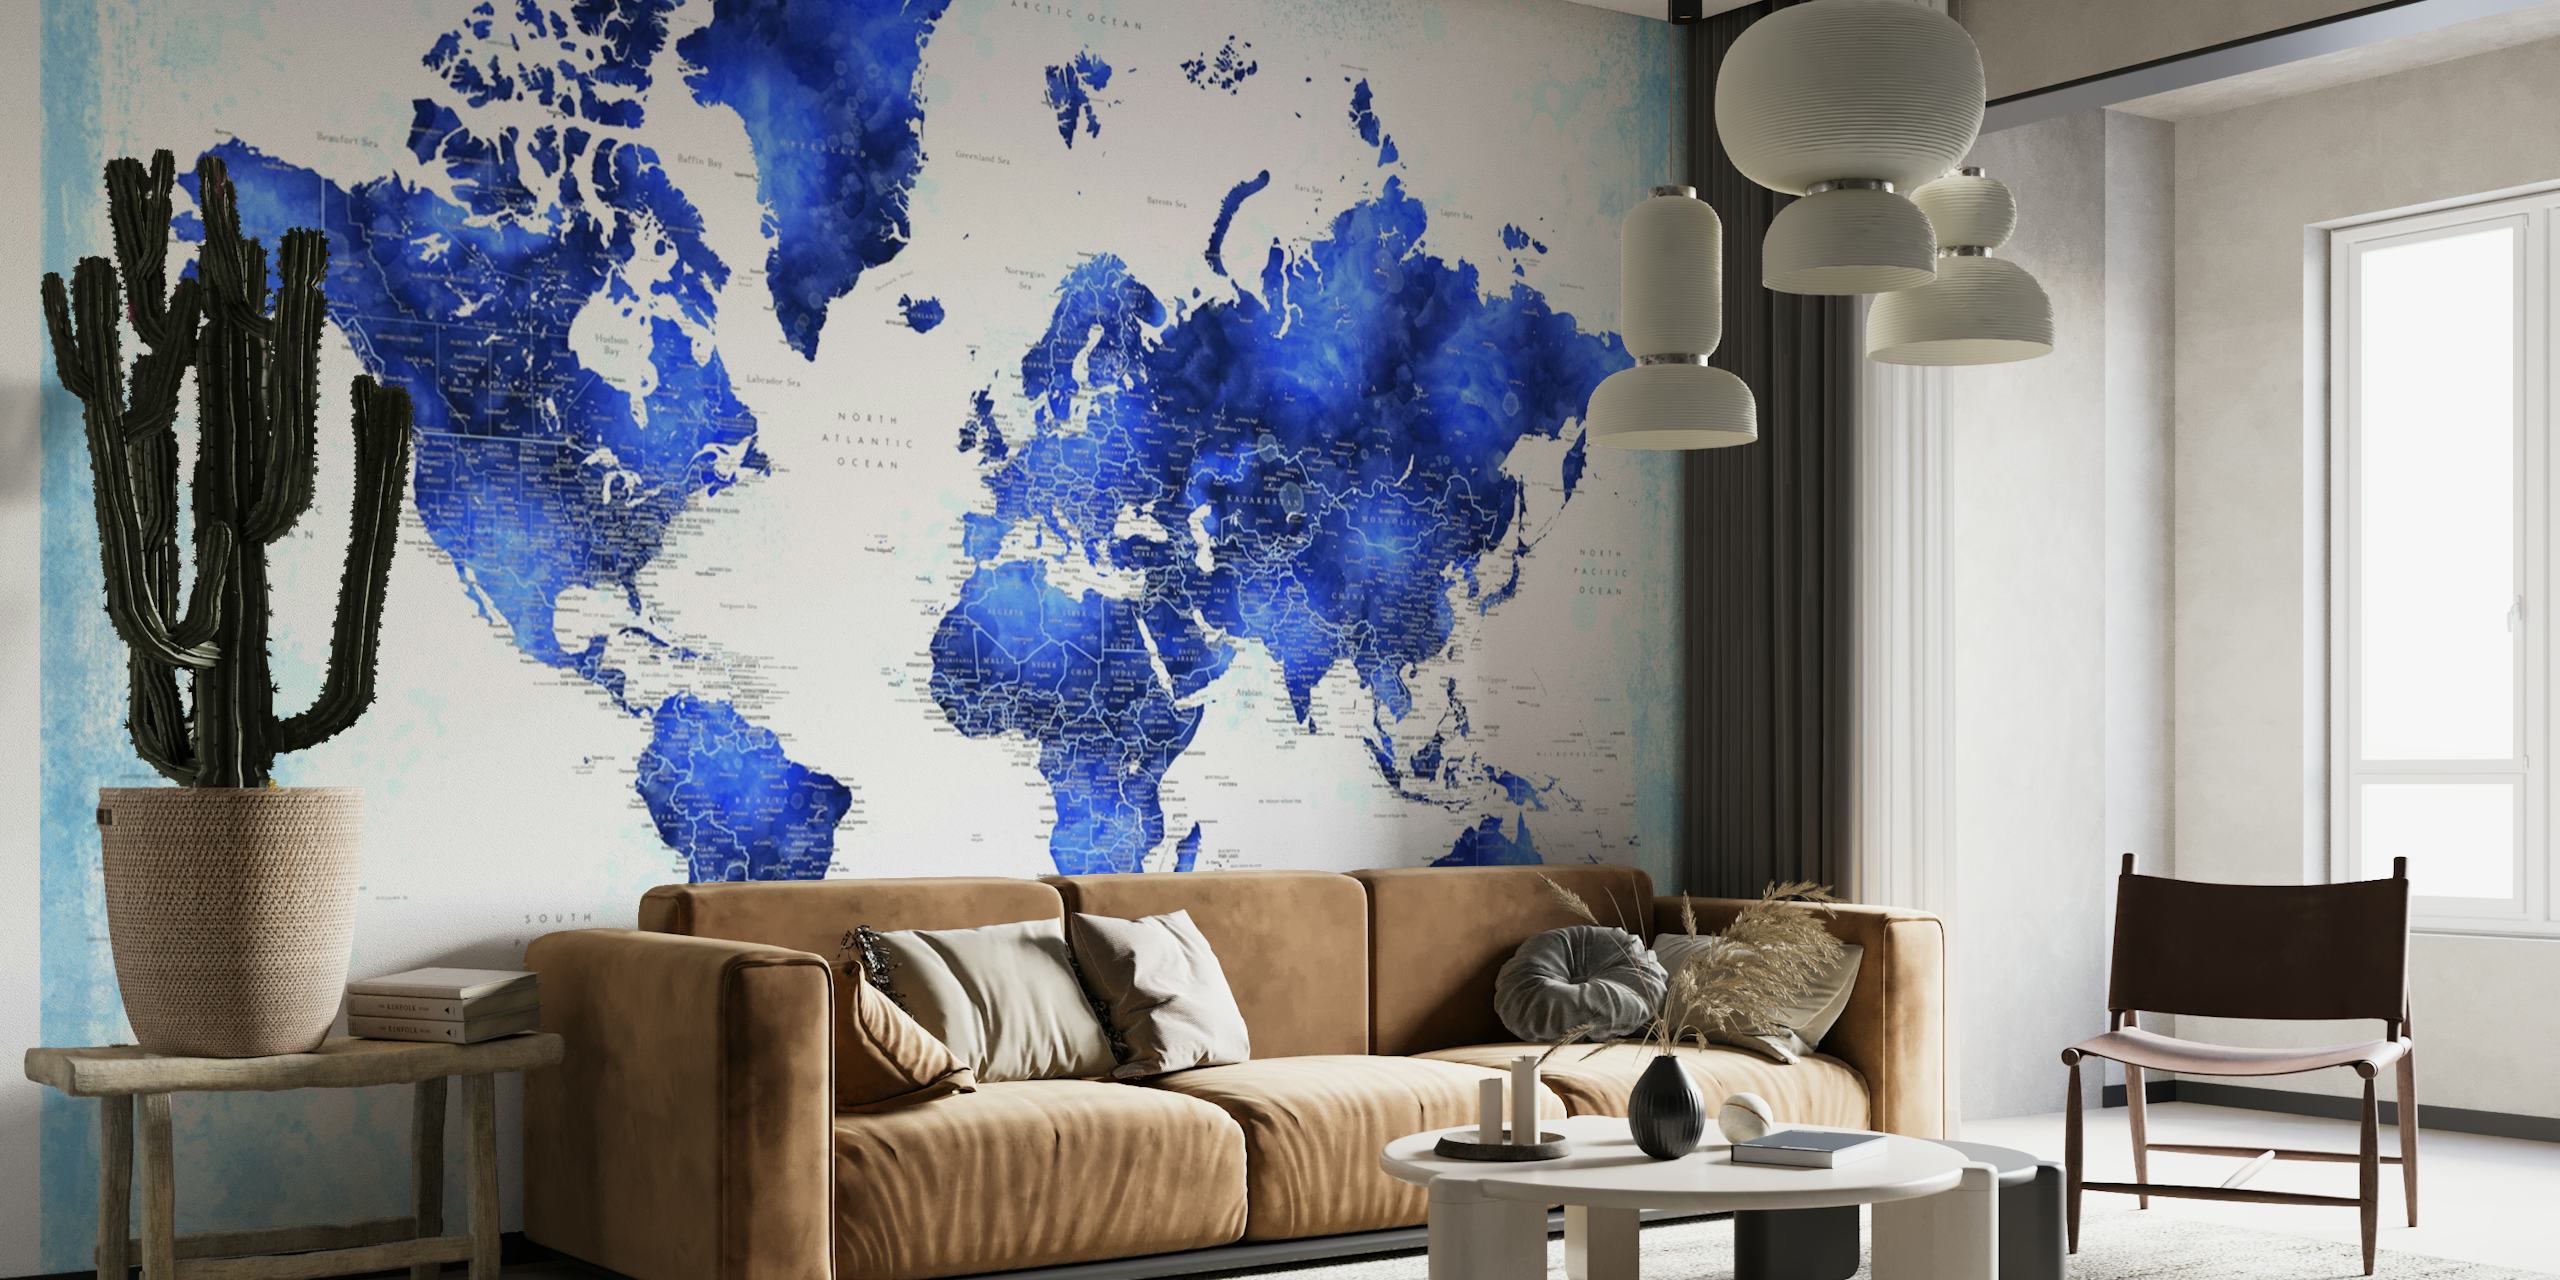 Yksityiskohtainen maailmankartta Georginon seinämaalaus sinisissä sävyissä